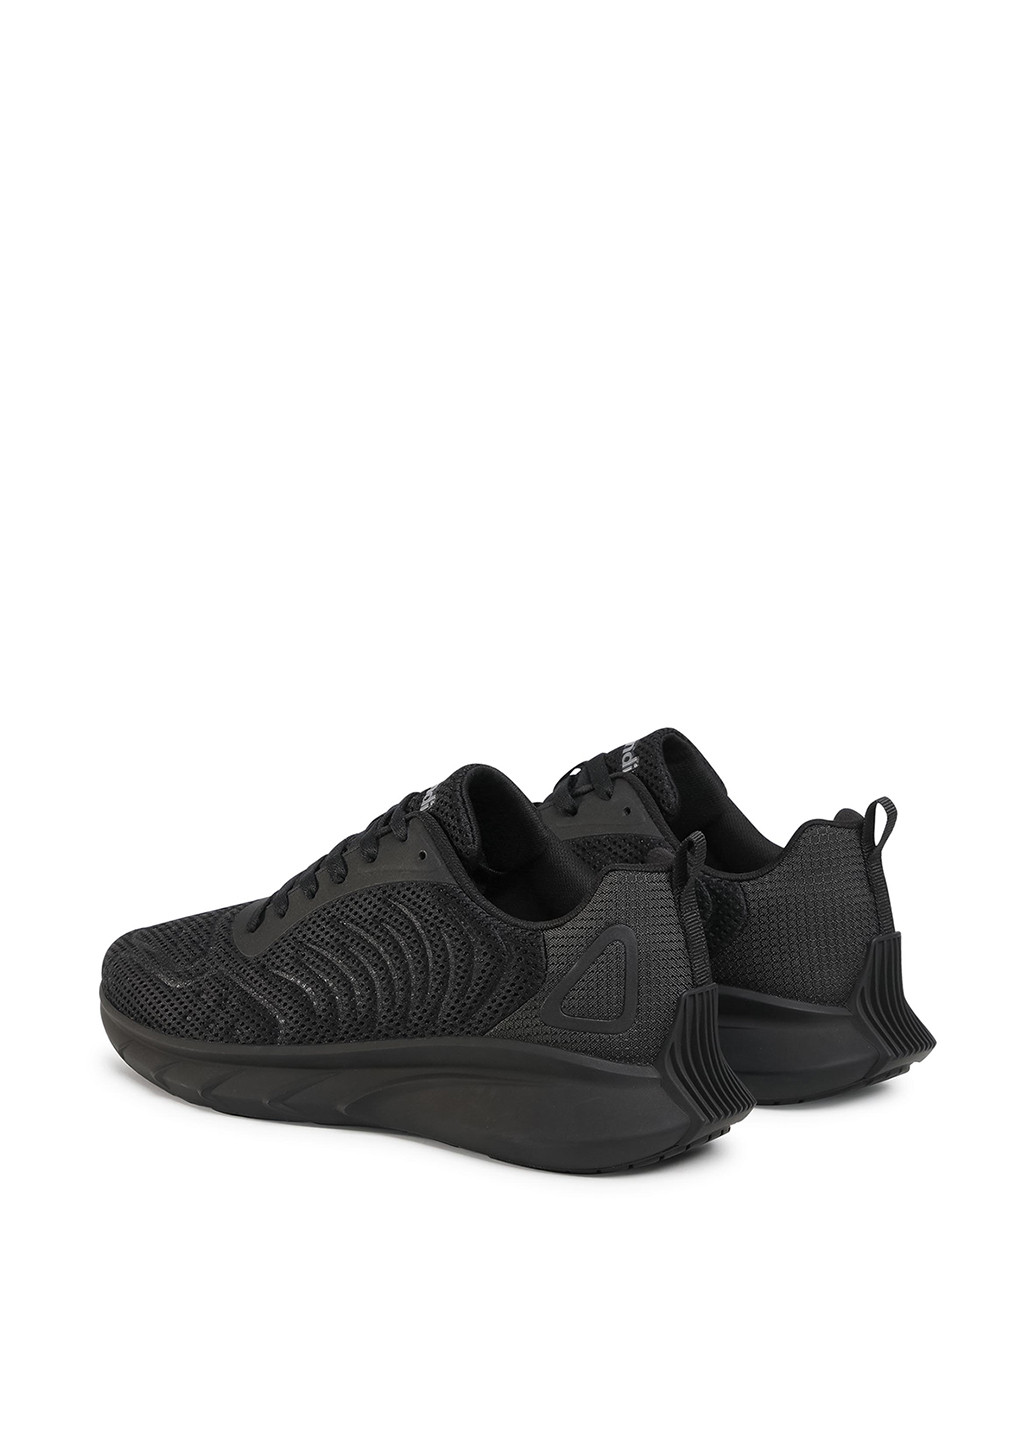 Чорні Осінні кросівки Sprandi MP-GF20R077A-1